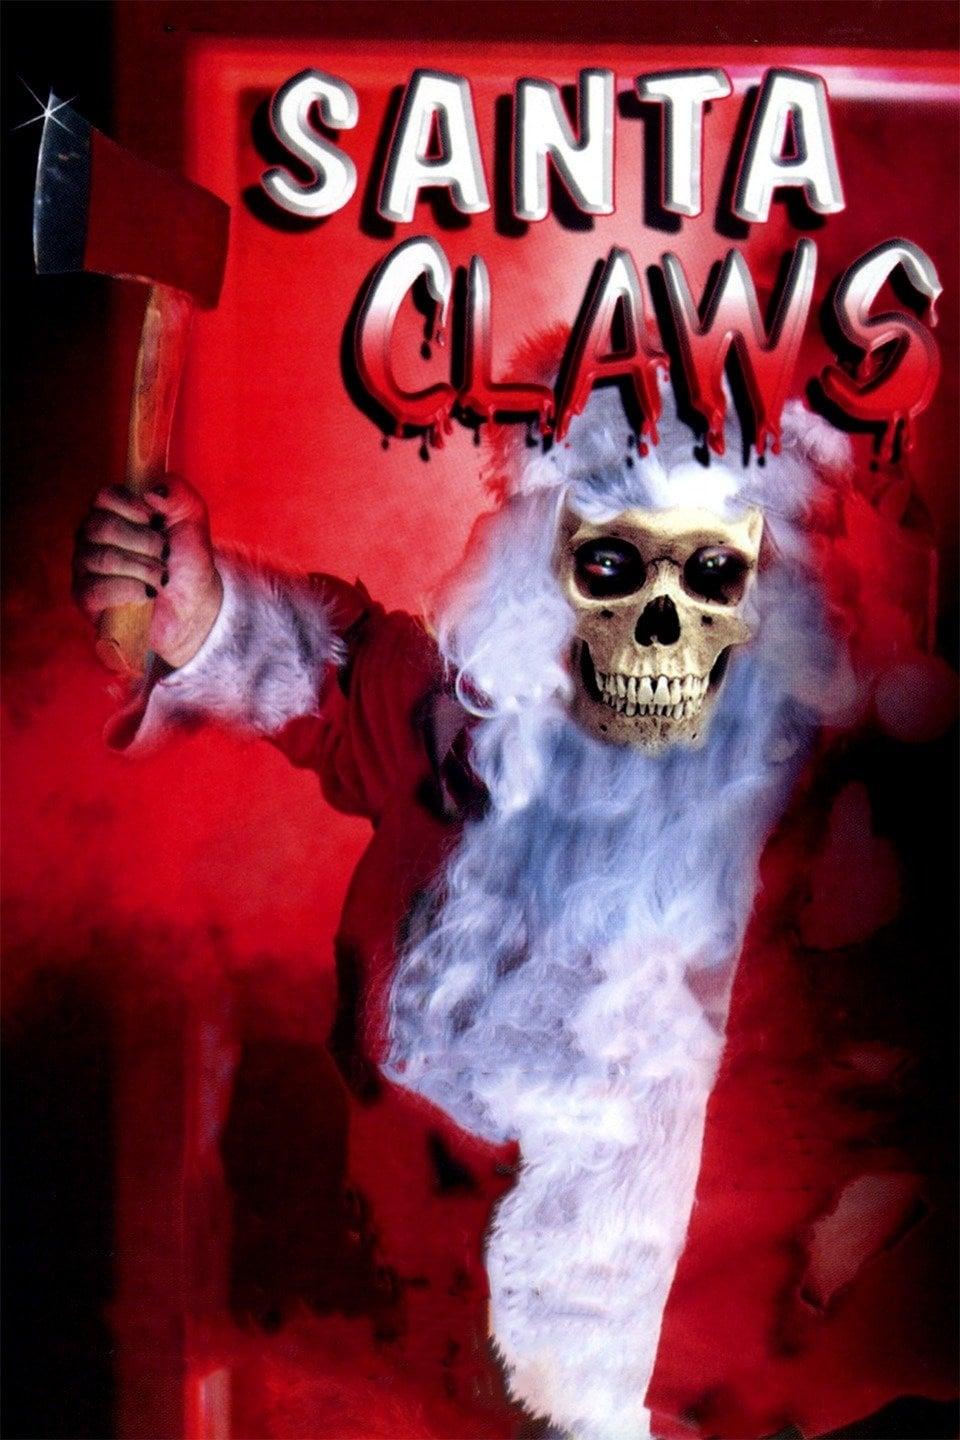 Santa Claws poster